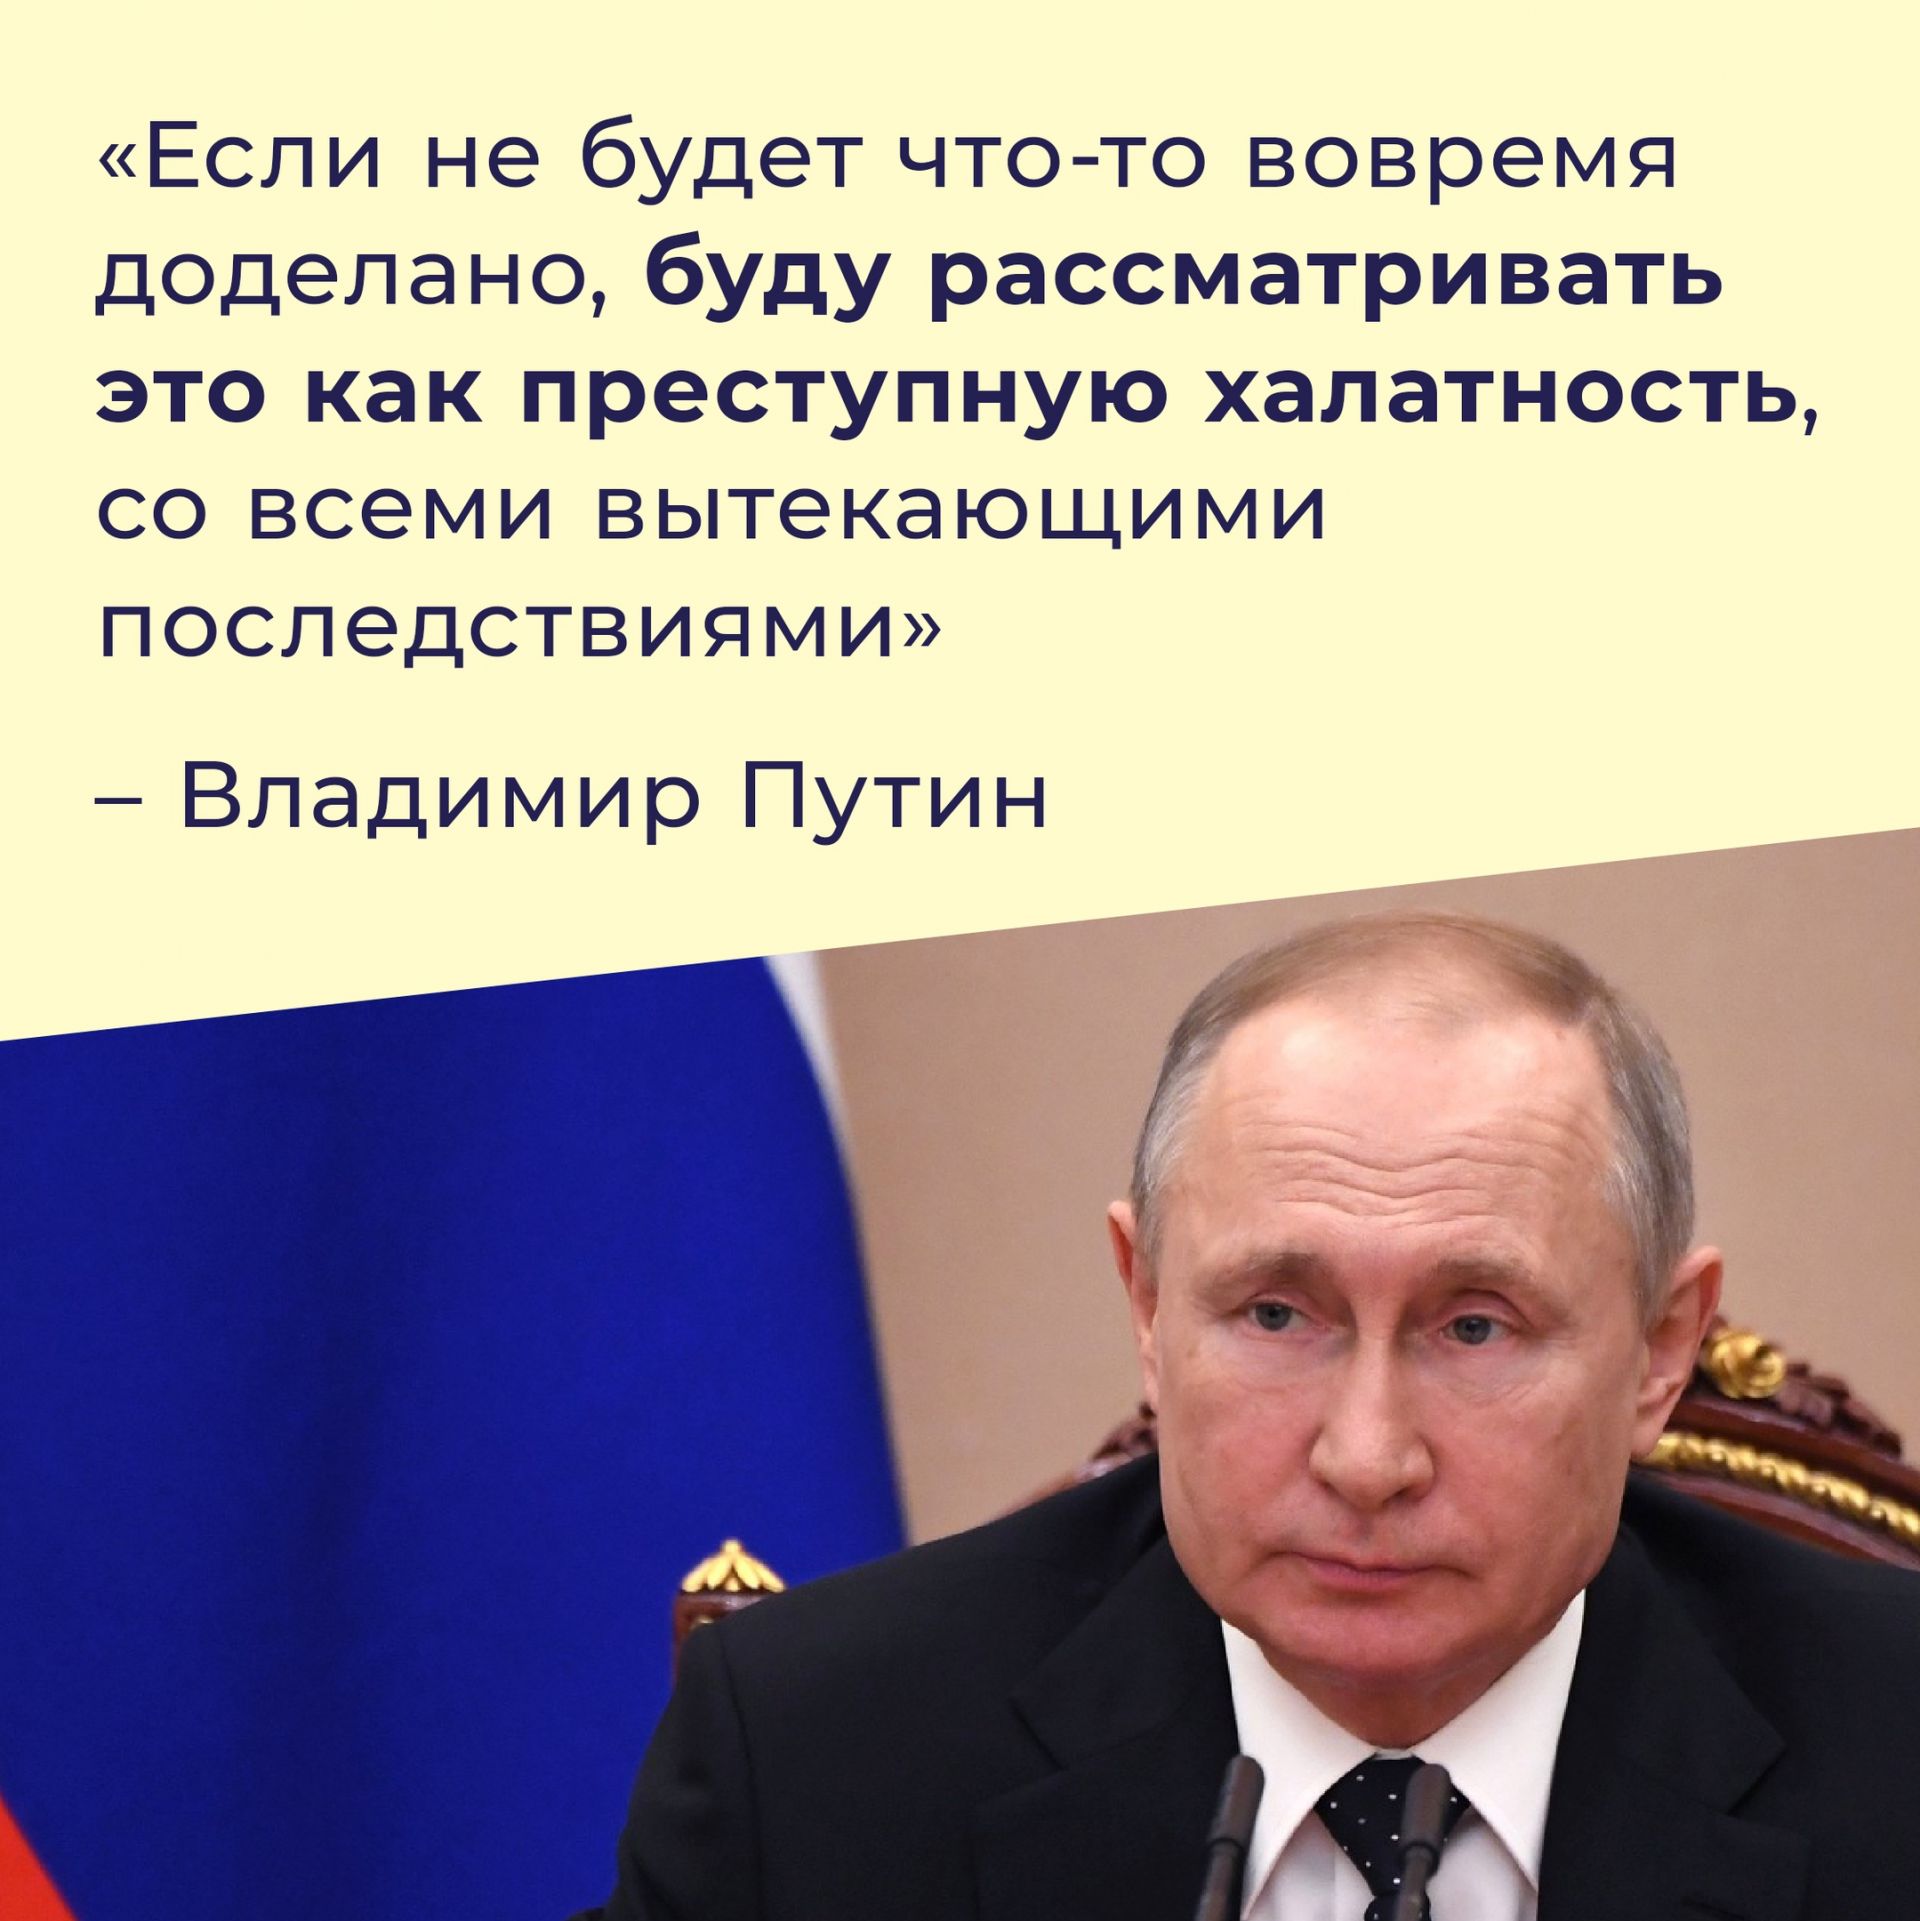 Путин: - “Если что-то не будет вовремя доделано, буду рассматривать это как преступную халатность”.